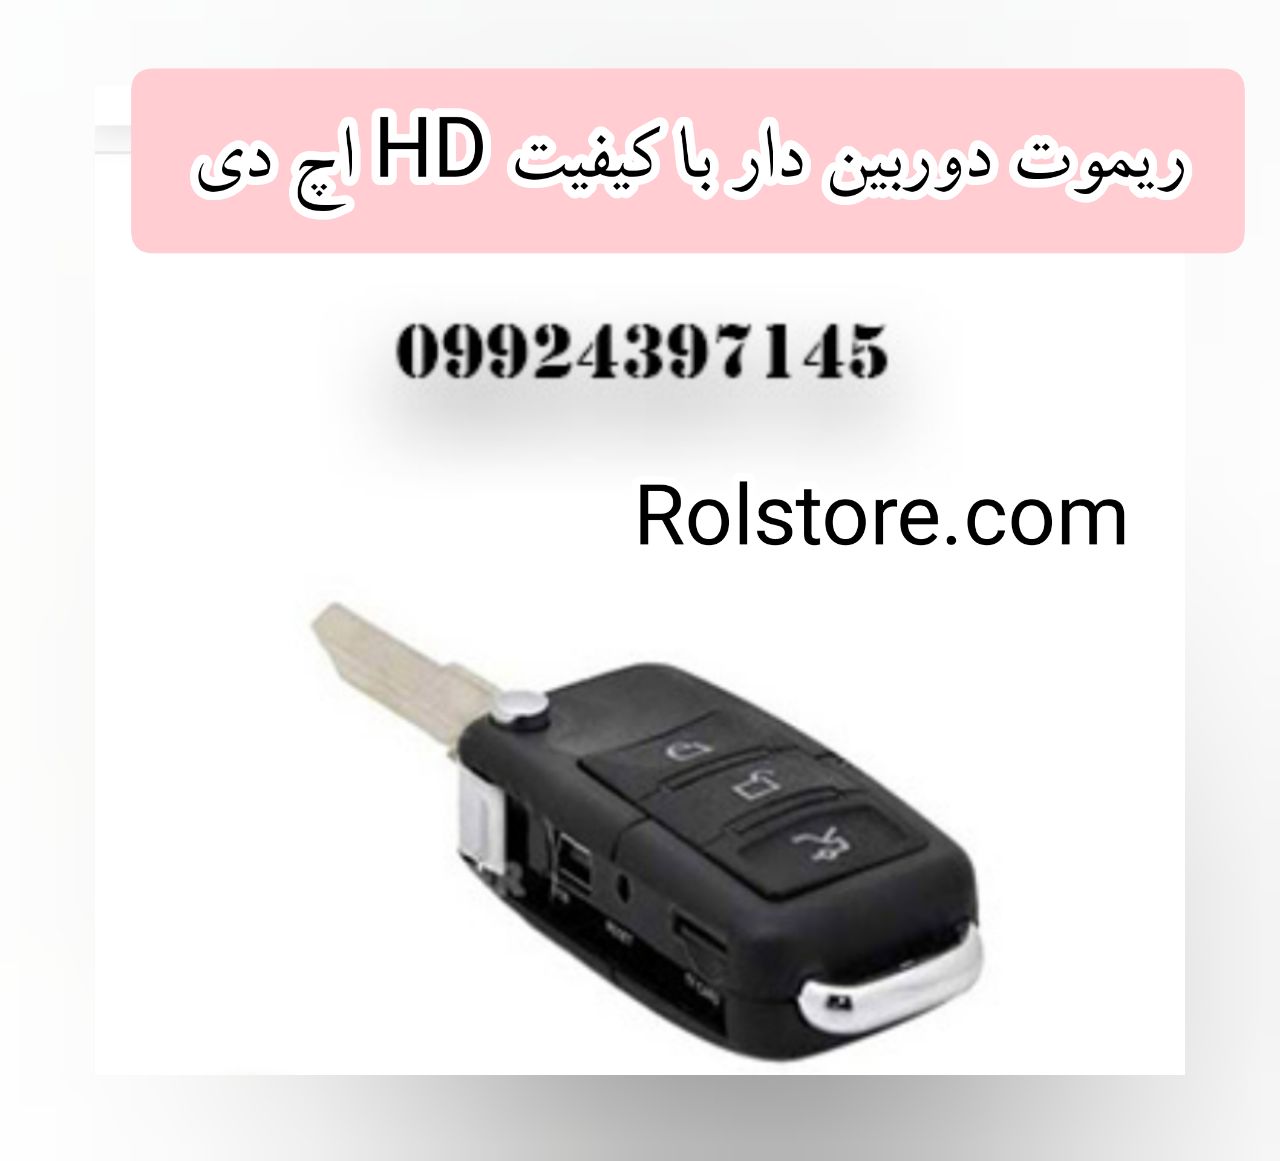 ریموت دوربین دار با کیفیت HD اچ دی/۰۹۹۲۴۳۹۷۱۴۵/قیمت ریموت دوربین دار